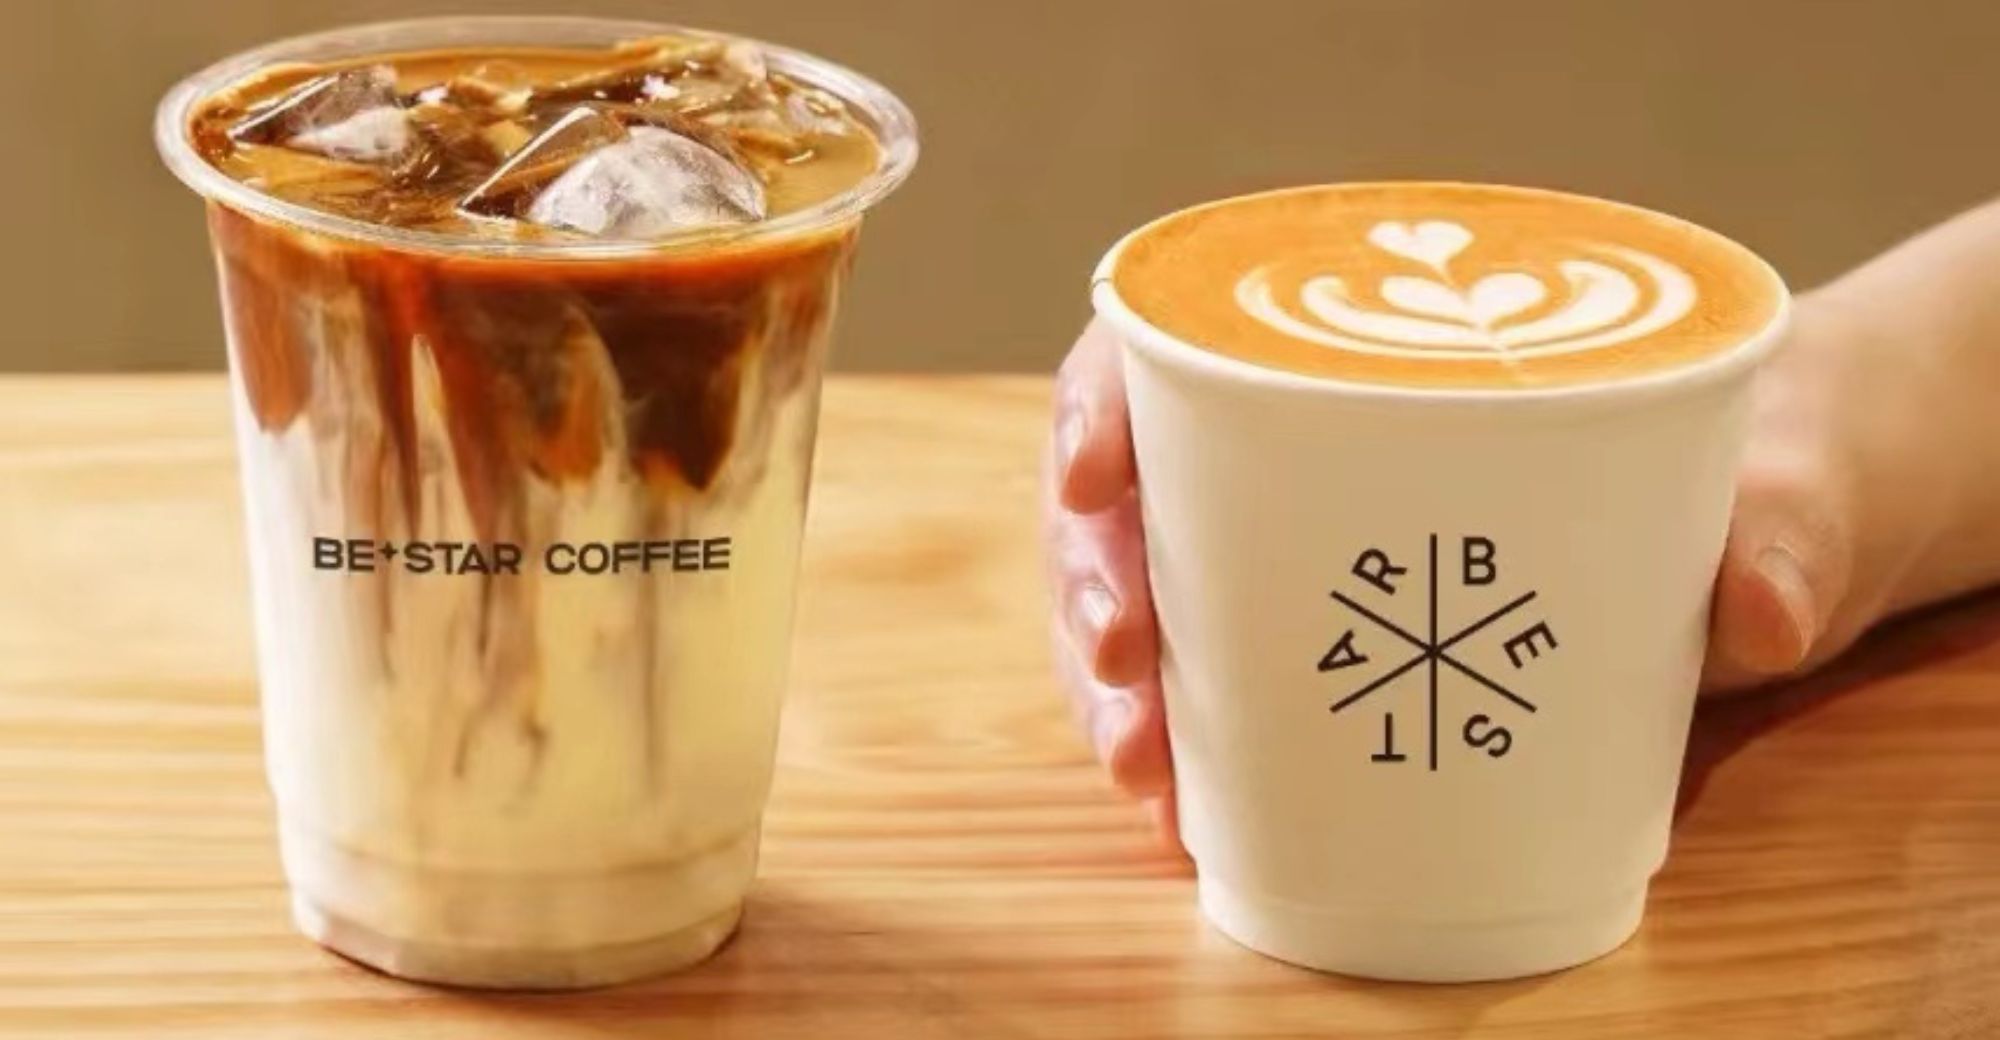 Uusi kiinalainen kahviketju Bestar Coffee turvaa miljoonien enkelikierroksen rahoituksen